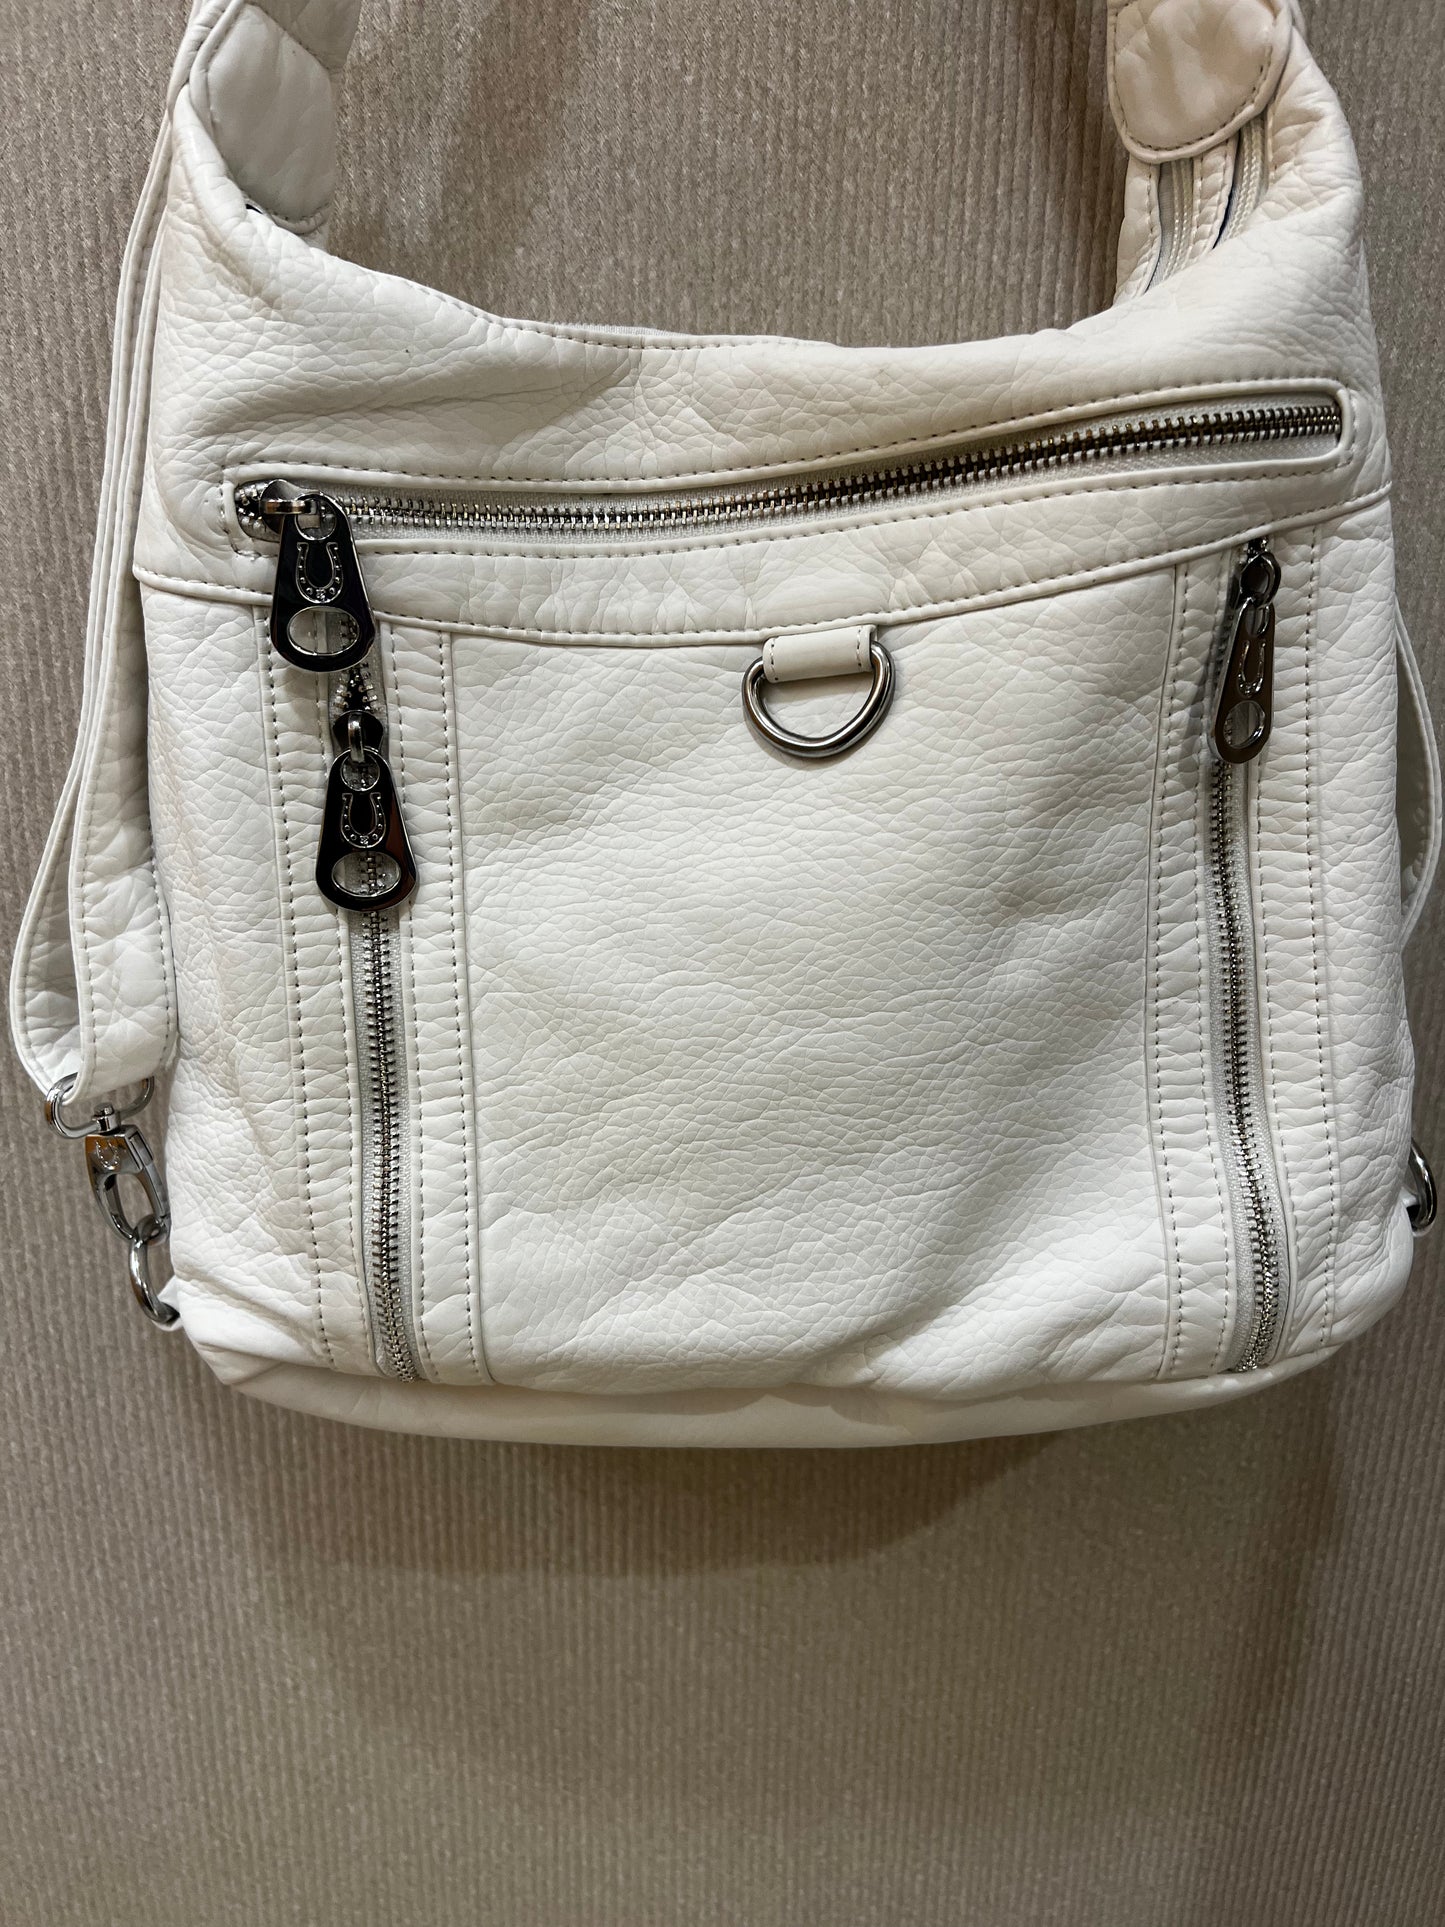 White 3 in 1 style metal loop backpack purse